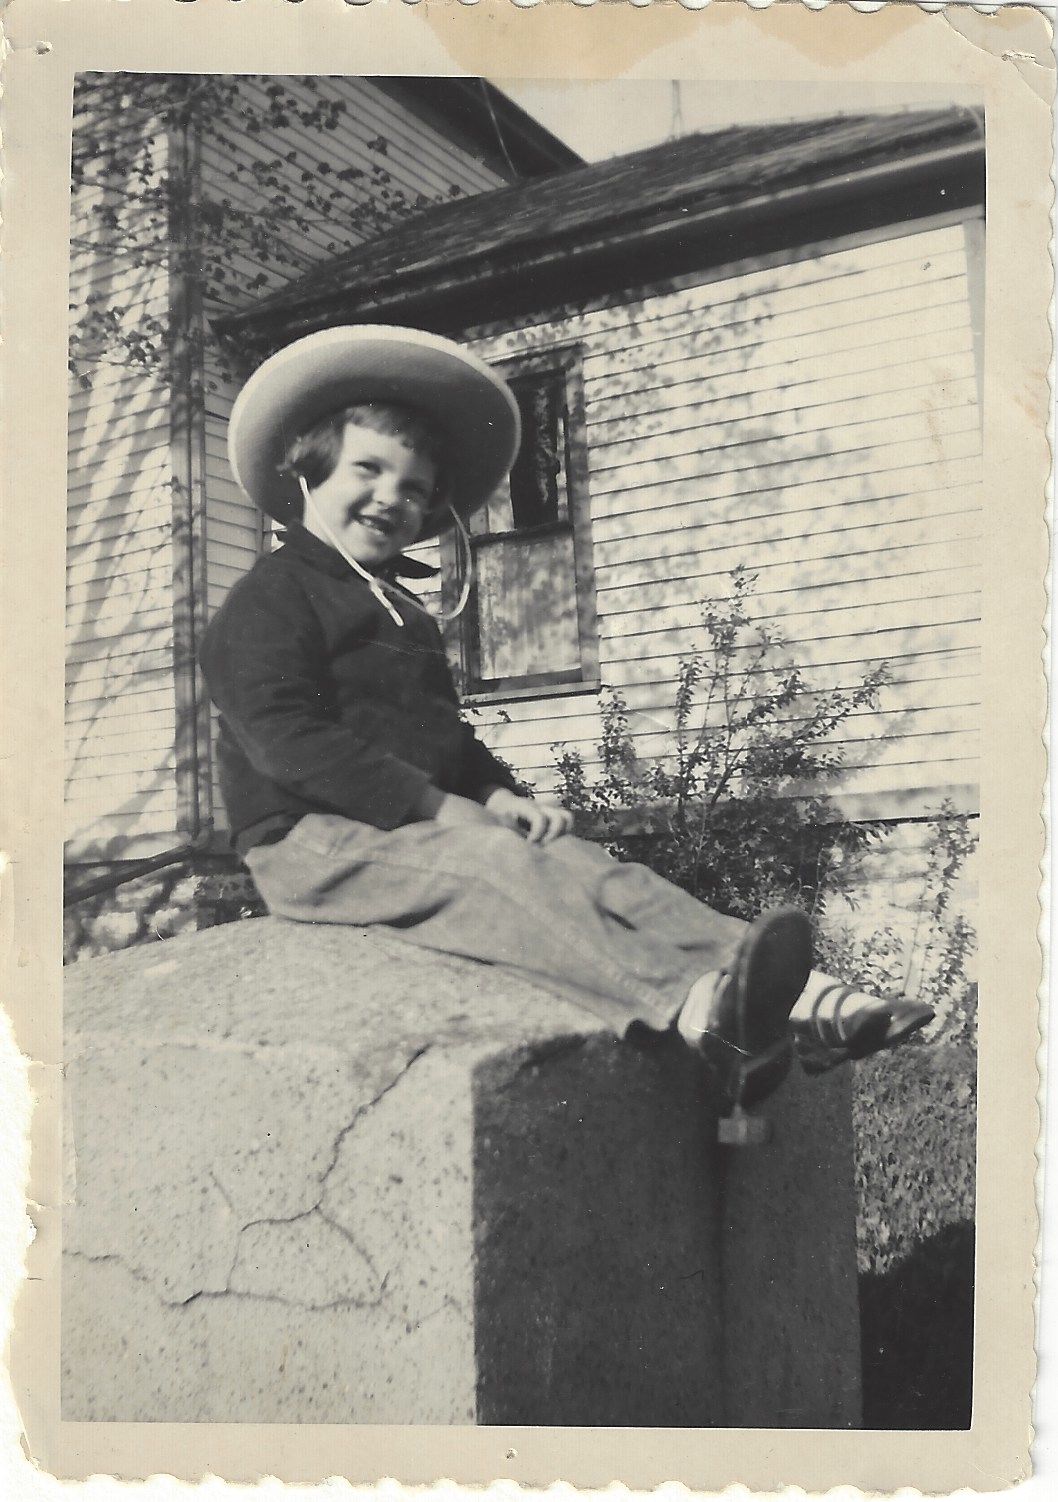 Lamar Van Dyke plays cowgirl as a child.